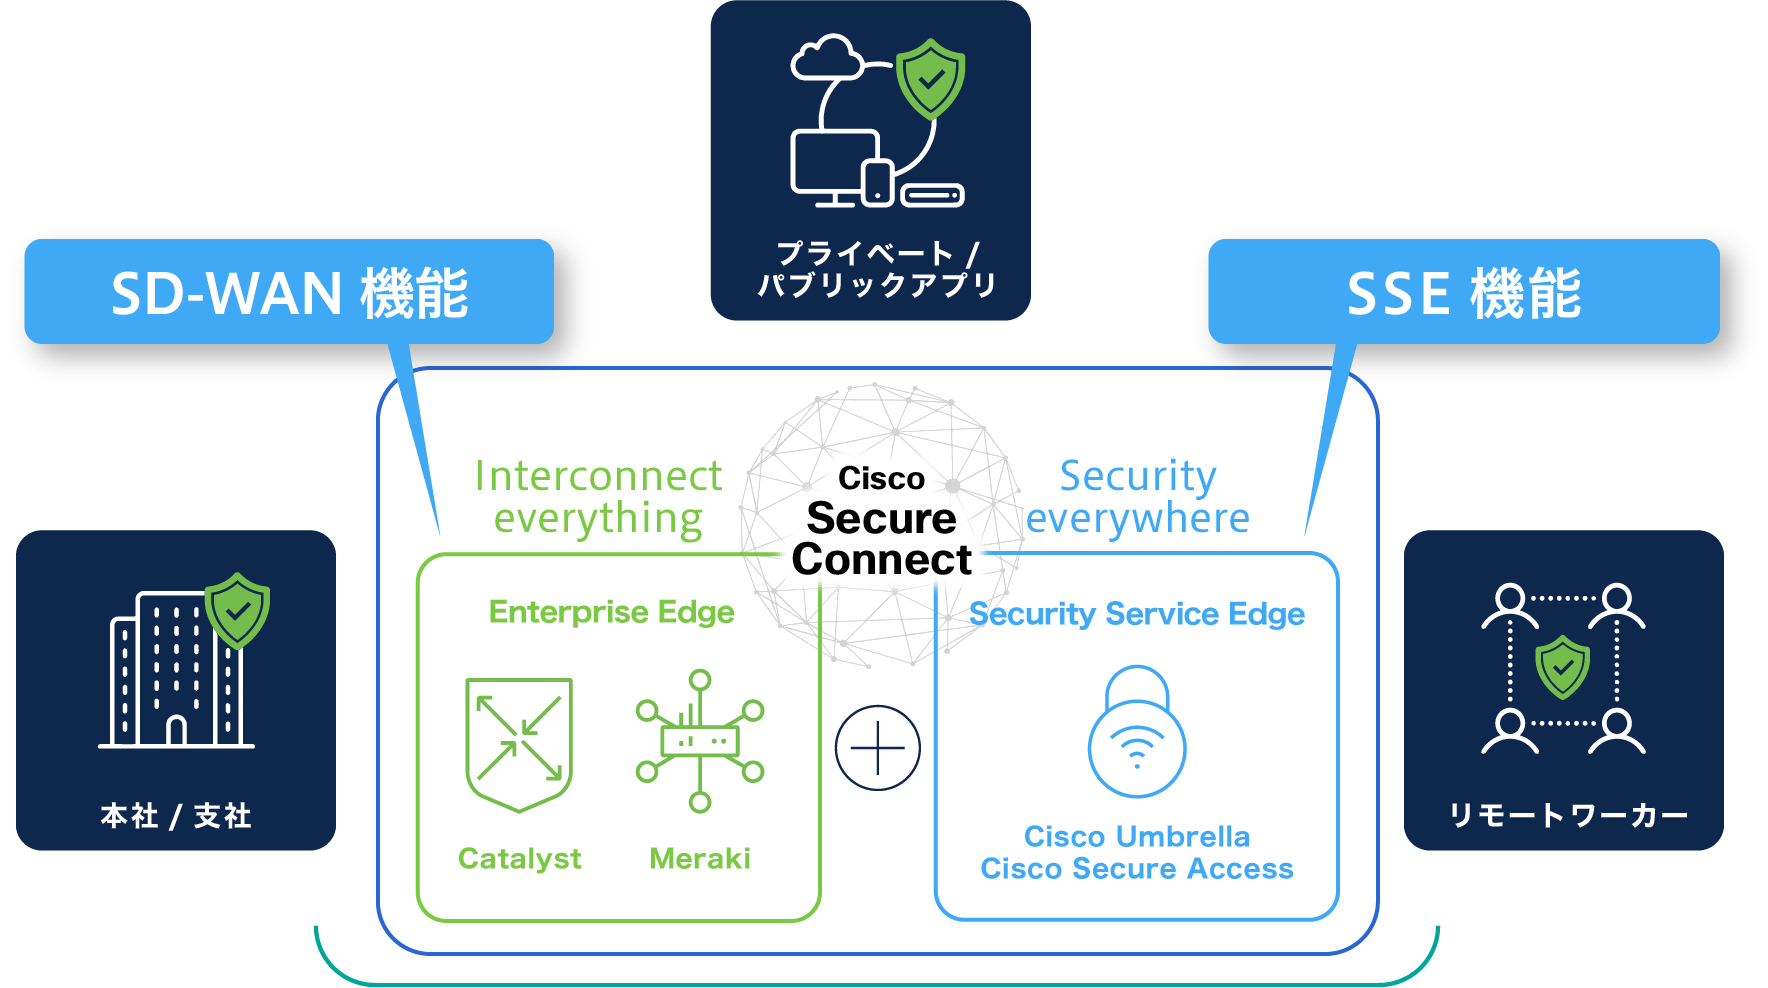 Cisco Secure Connectは「統合されたSASE」本社/支社、リモートワーカからプライベート/パブリックアプリへセキュアにアクセス可能SD-WAN機能（Enterprise EdgeのCatalyst/Meraki)とSSE機能(Secure Service EdgeのCisco Umbrella/Cisco Secure Access)を備えた、Cisco Secure Connect